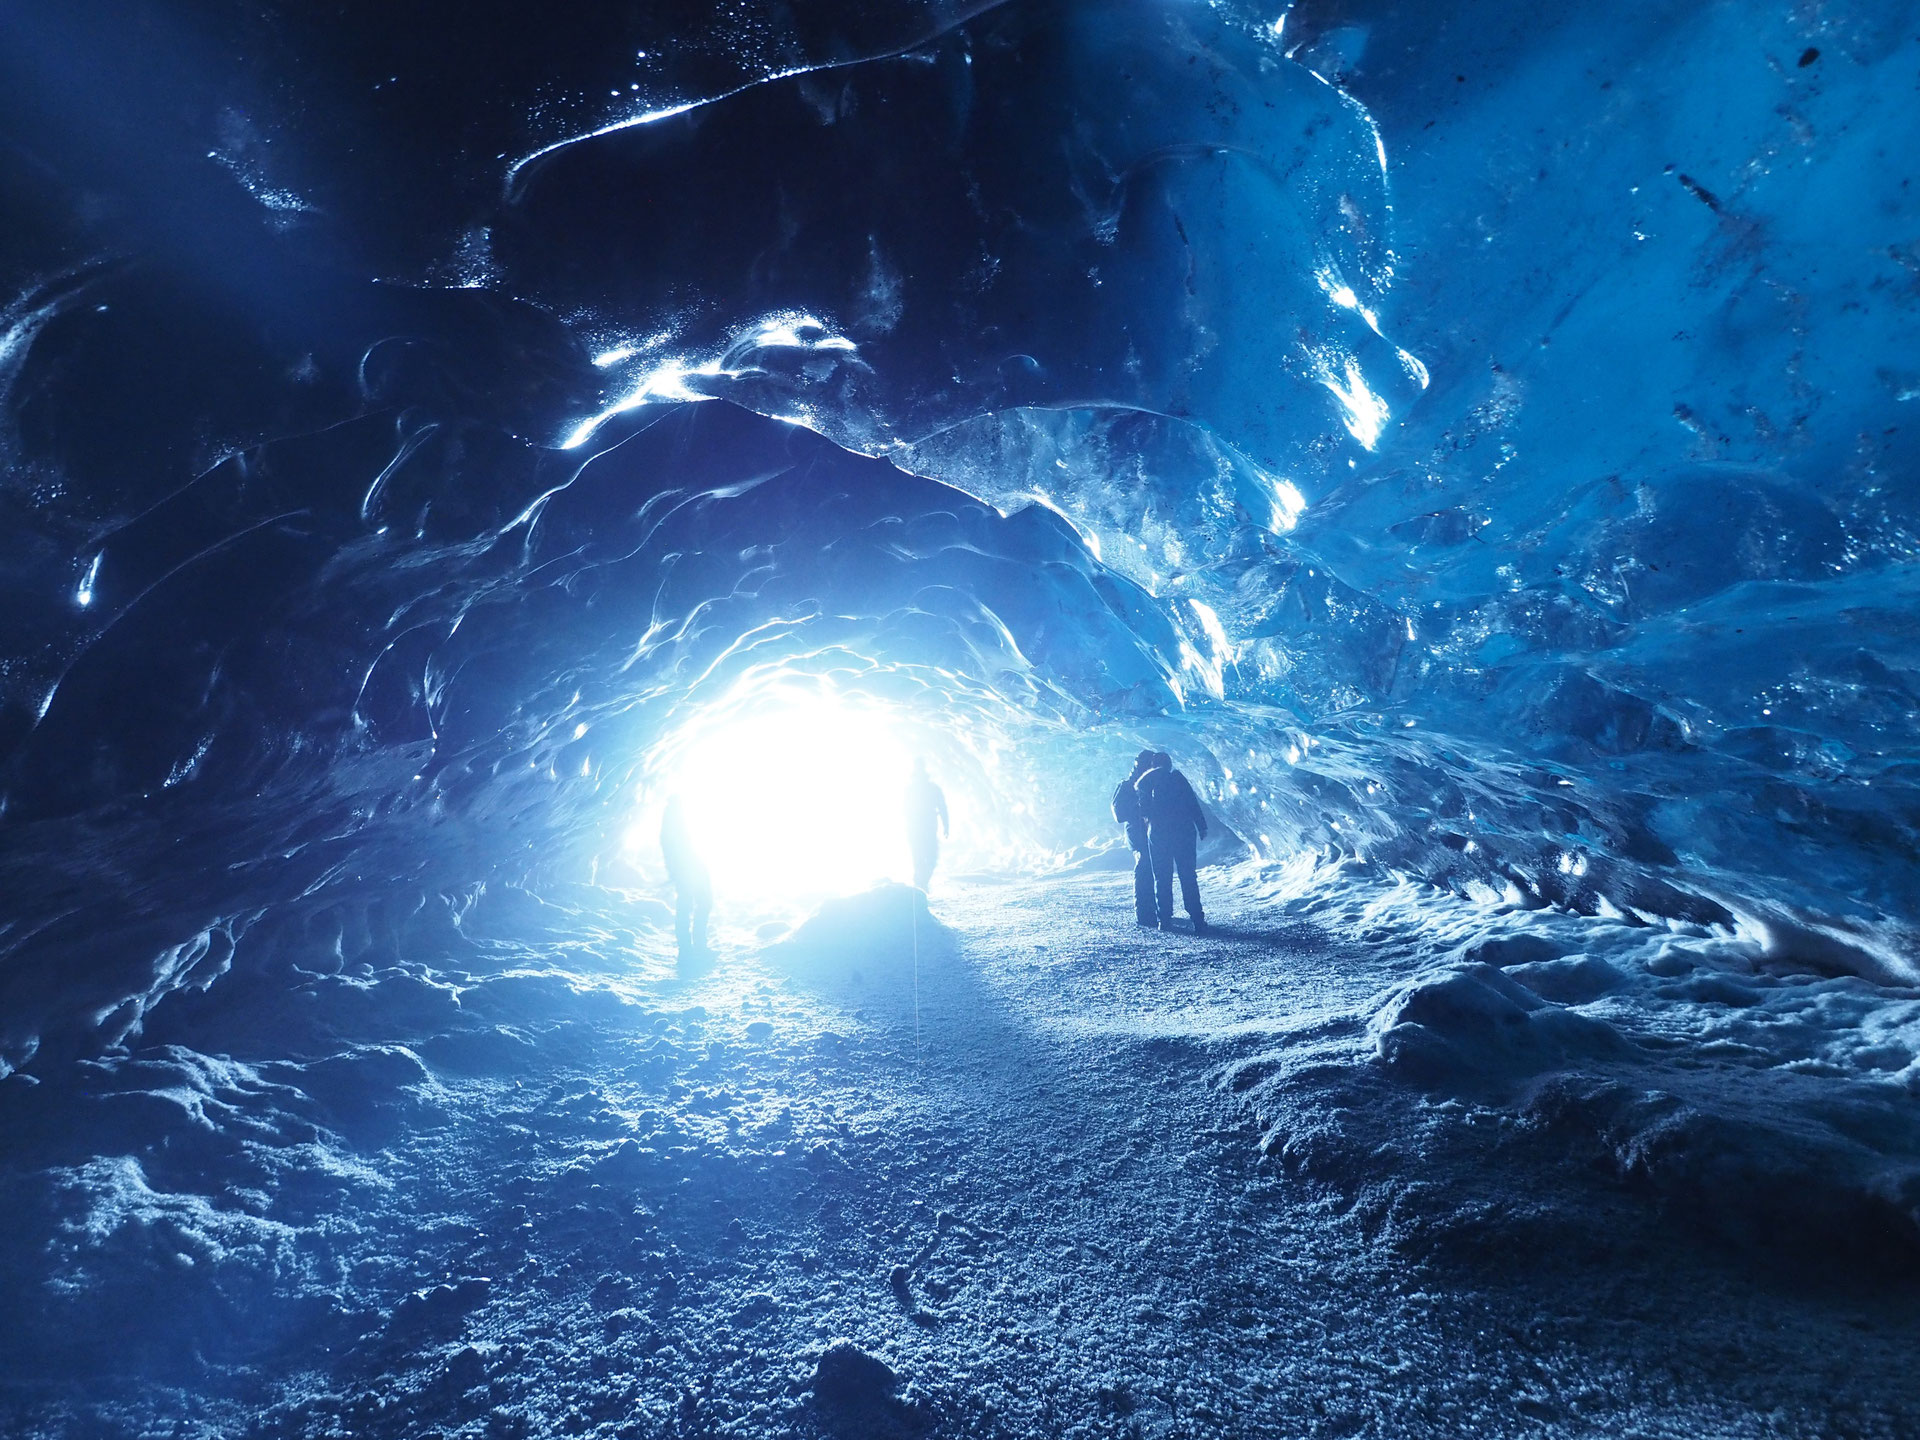 冬のアイスランド 氷の洞窟 ジェルネイルアート定額キャンペーン実施中のシルエットへようこそ